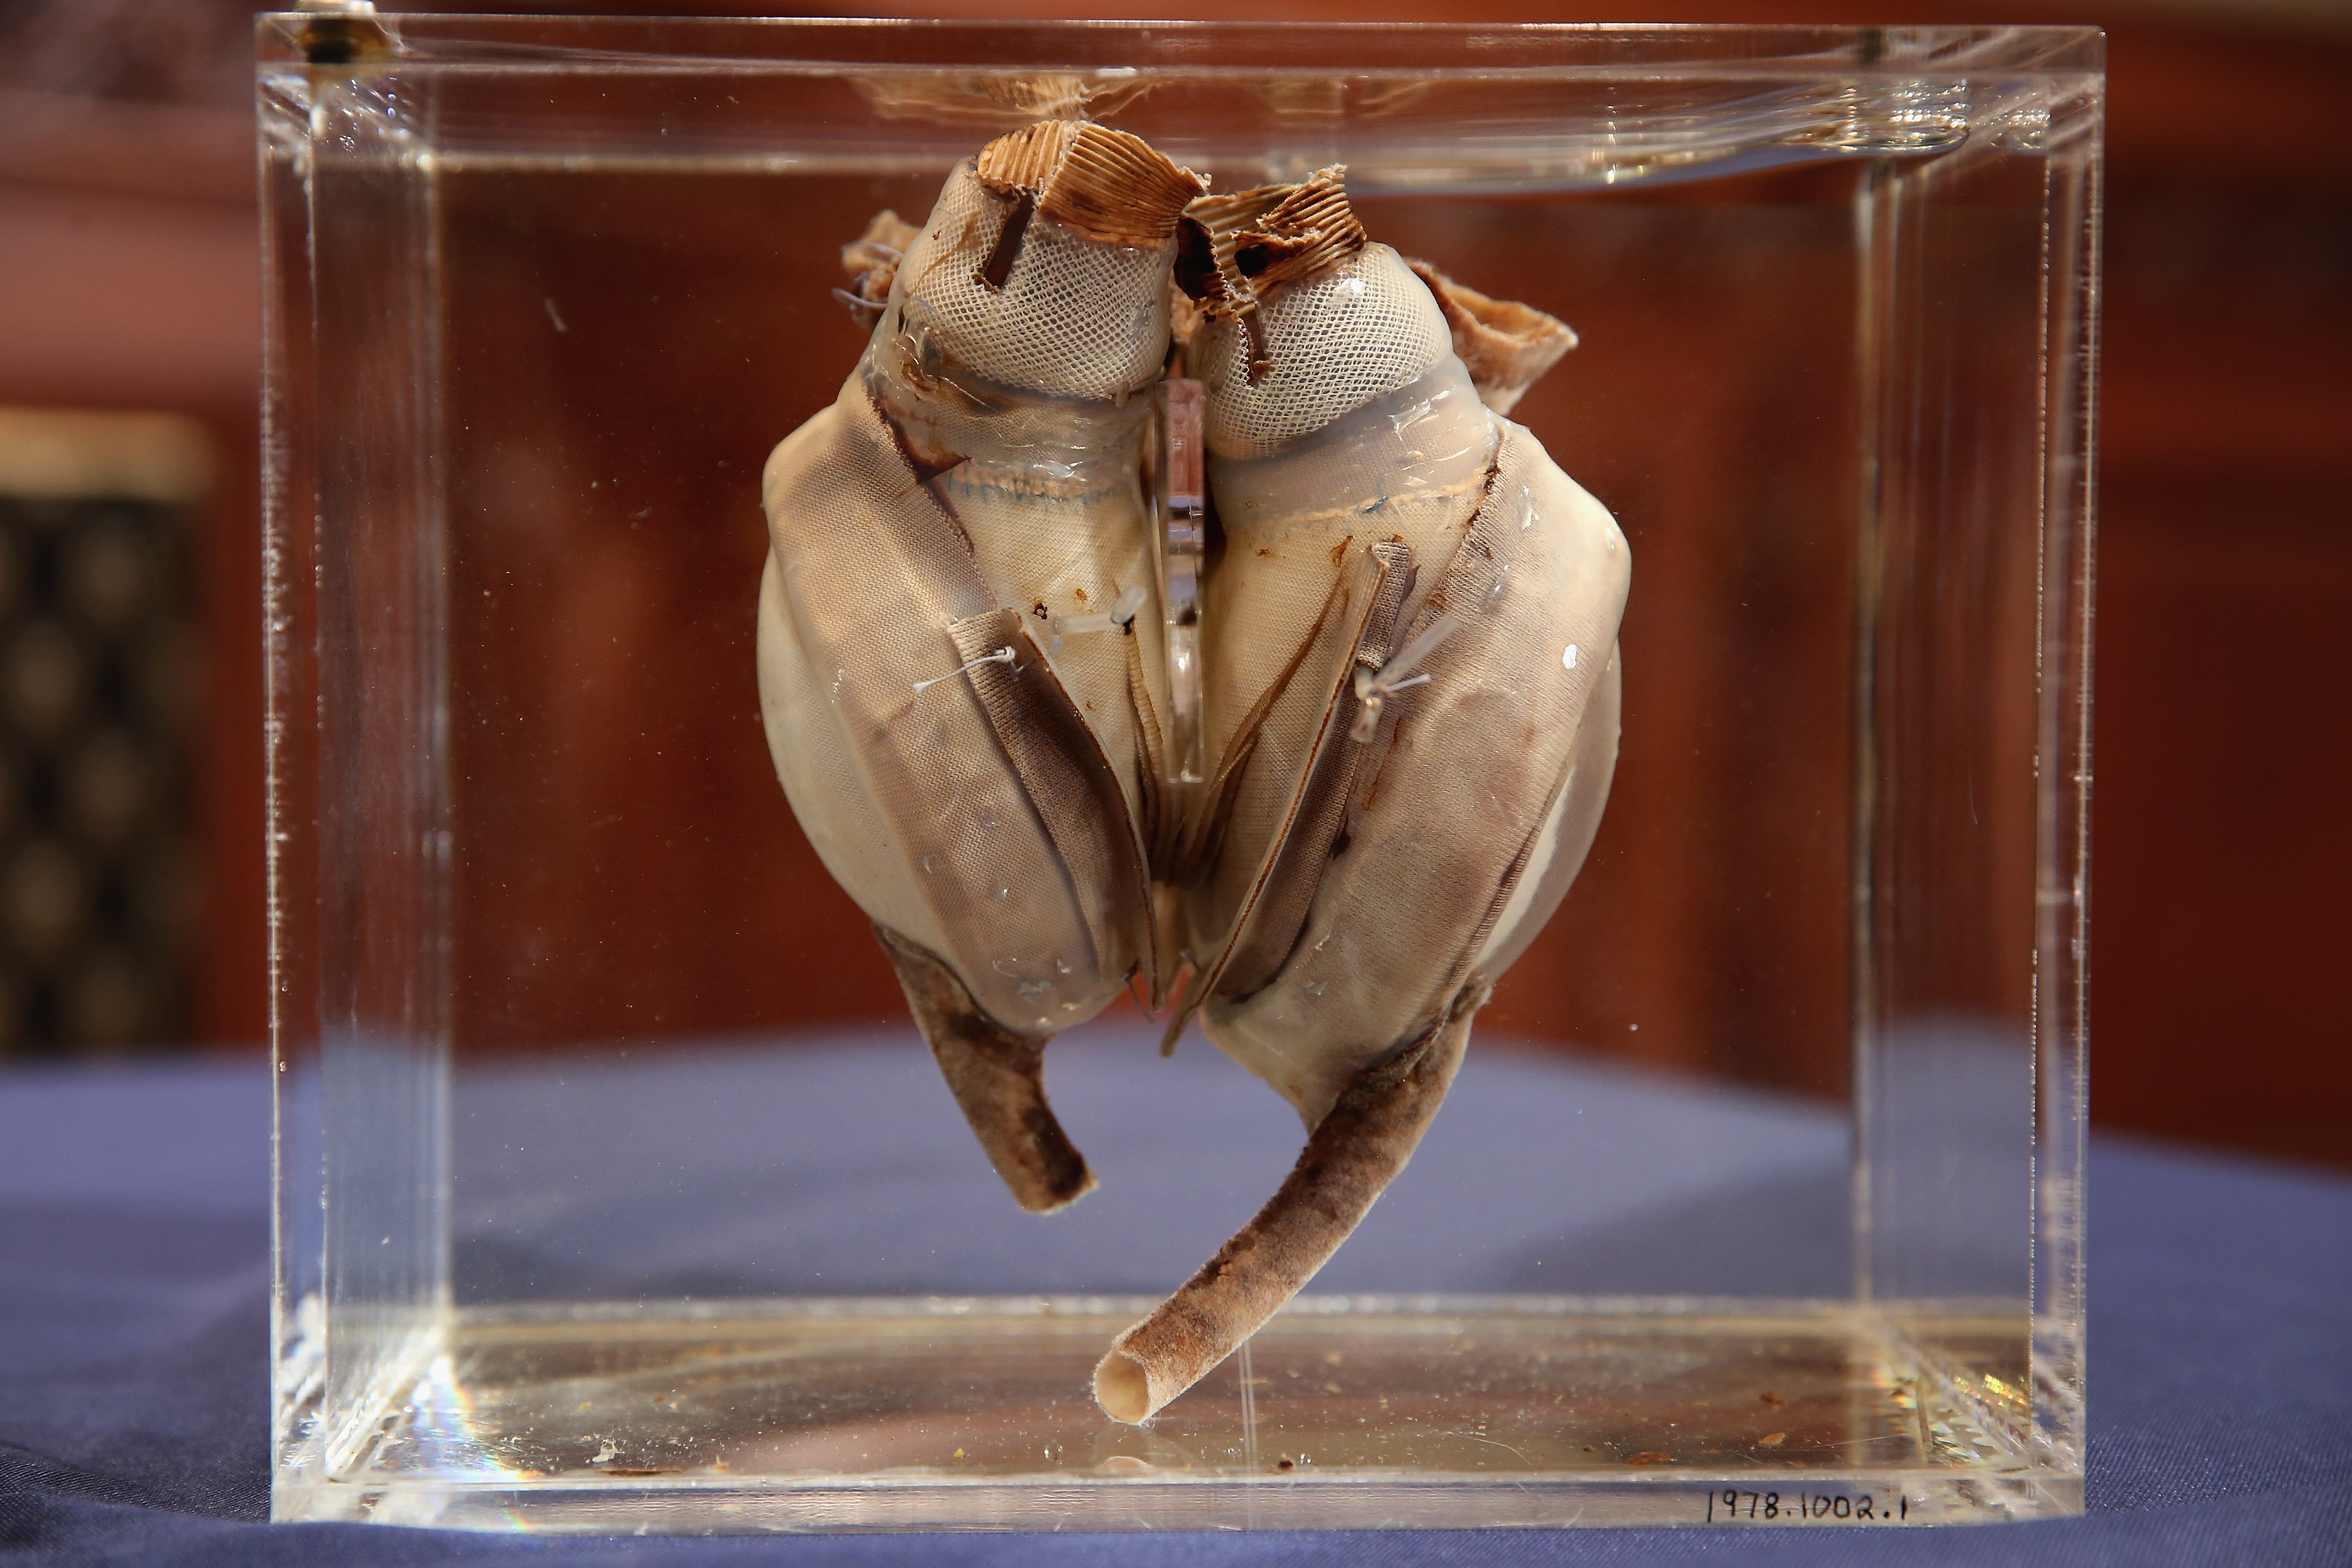 Il primo cuore artificiale impiantato in un essere umano, sviluppato da Liotta, insieme a Cooley / (Chip Somodevilla/Getty Images)